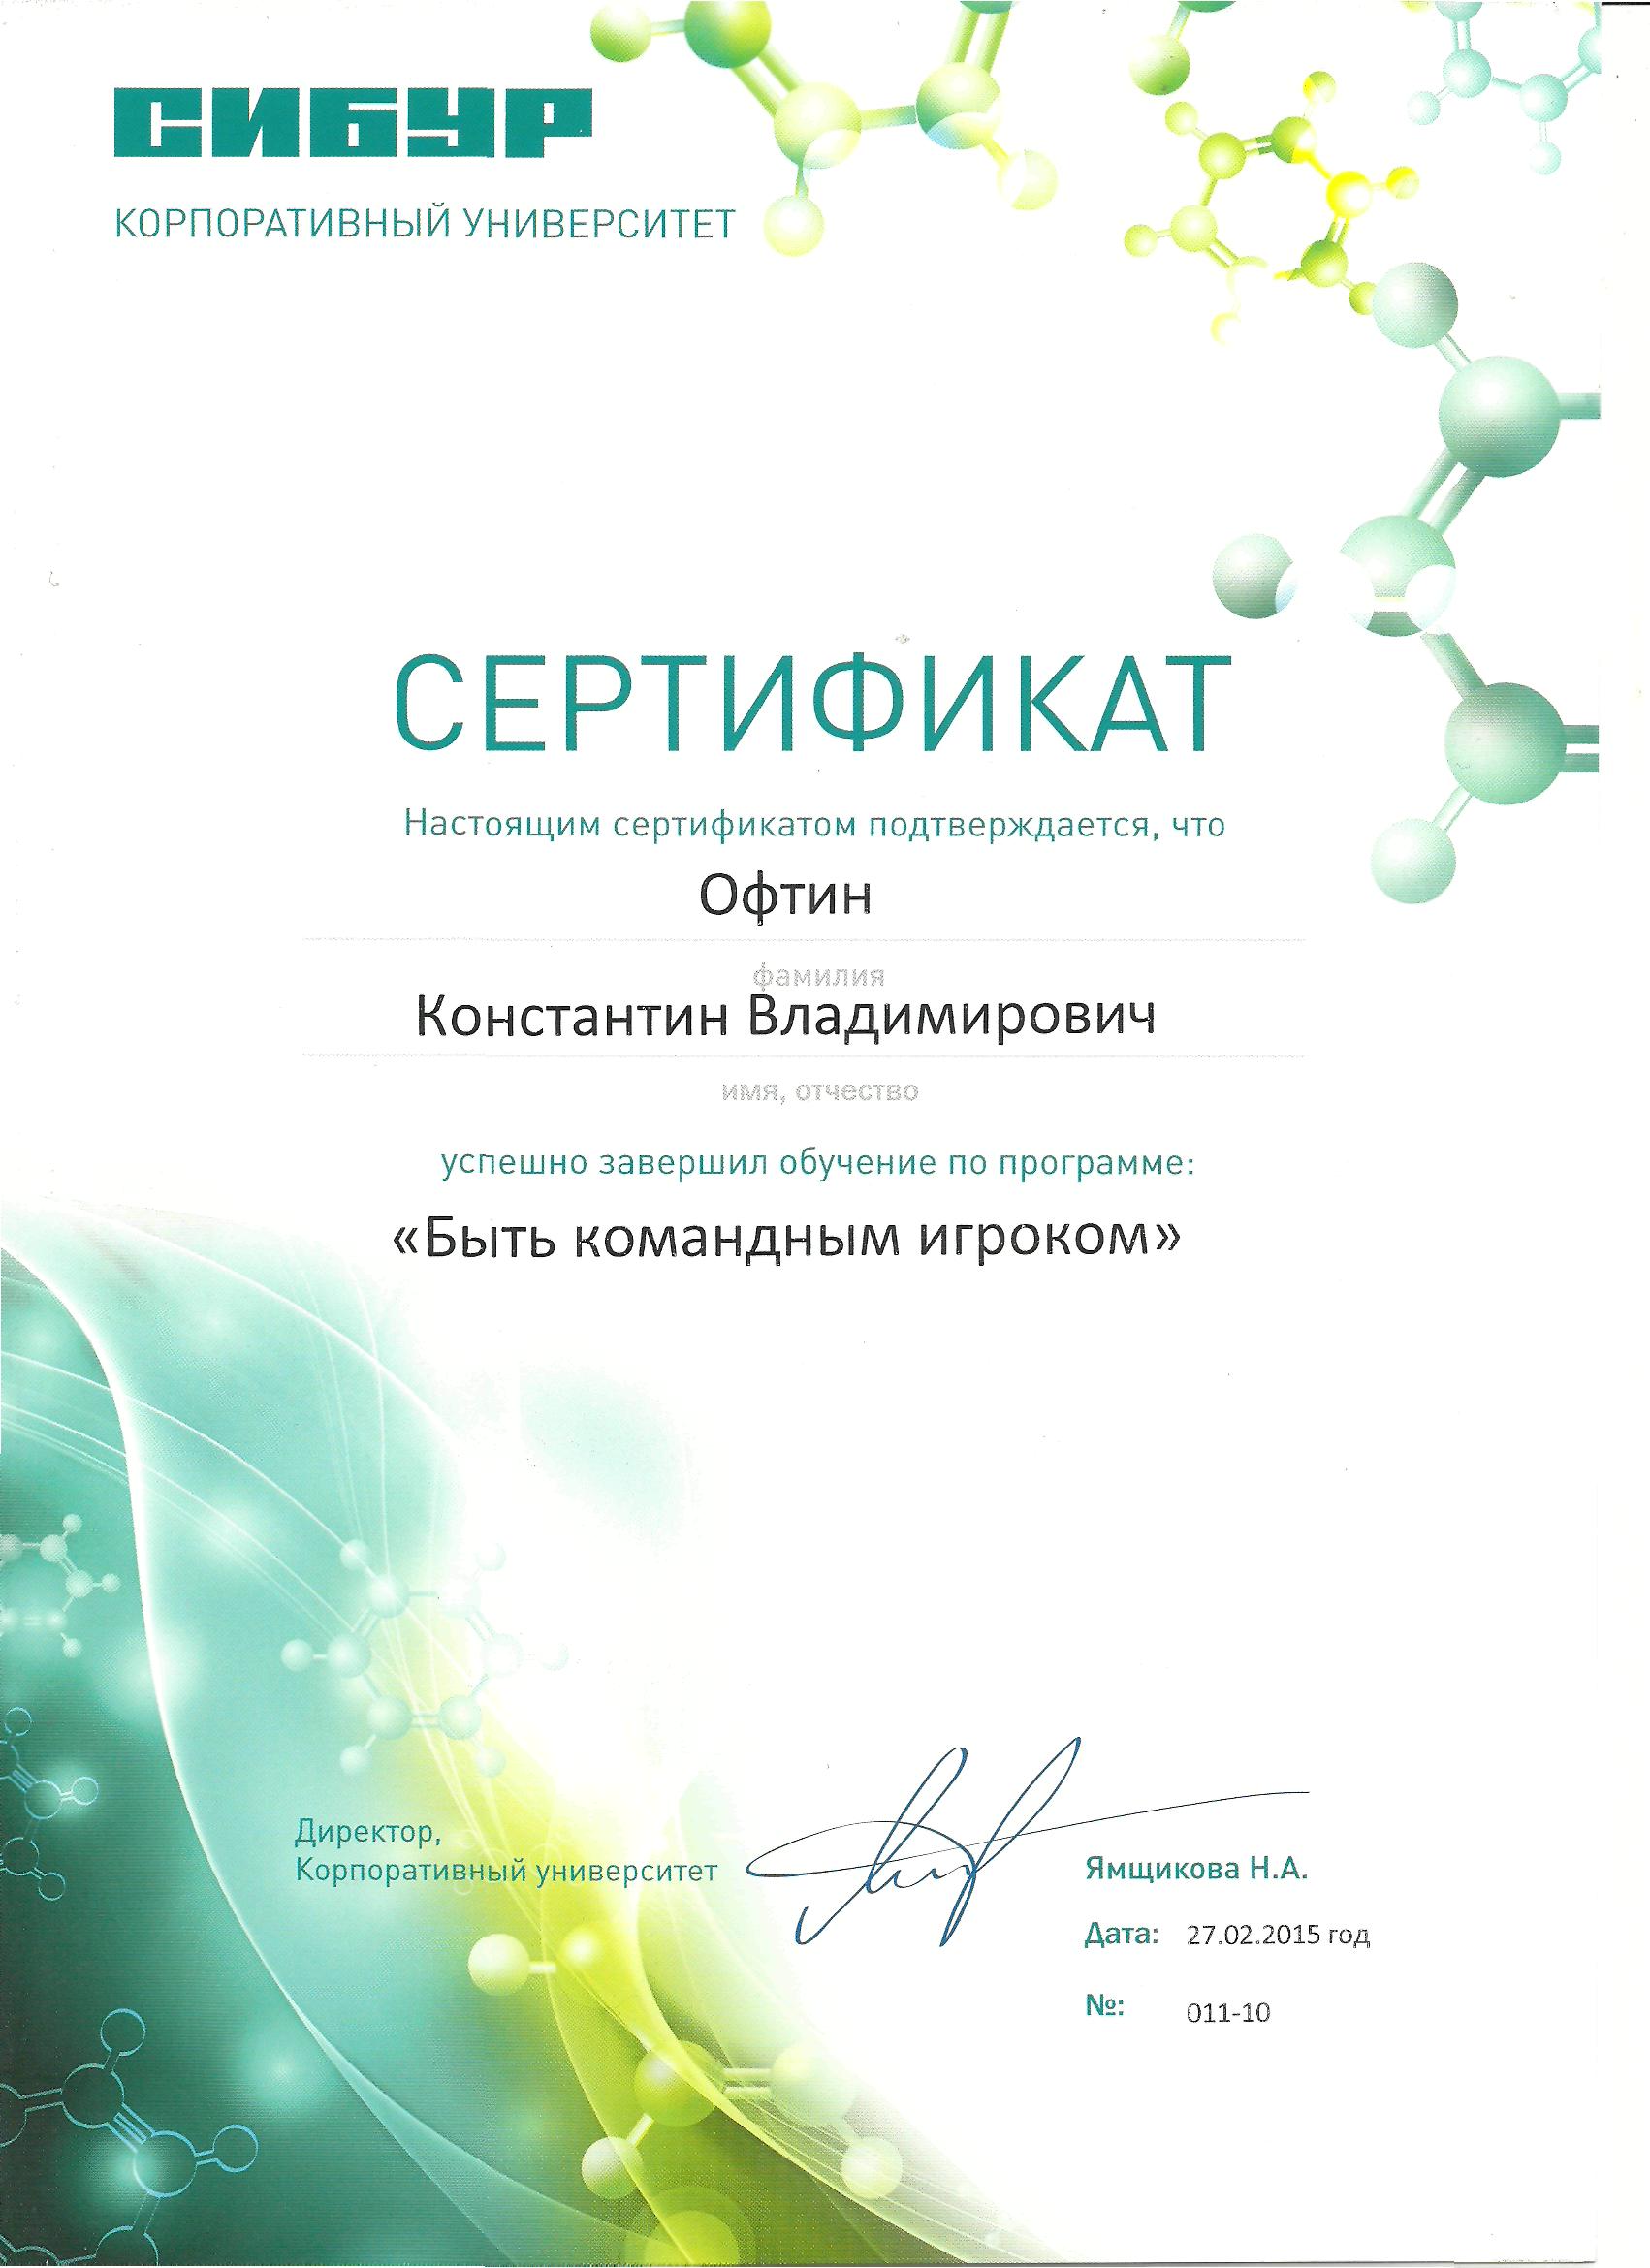 Сертификат Сибур Офтин К.В.